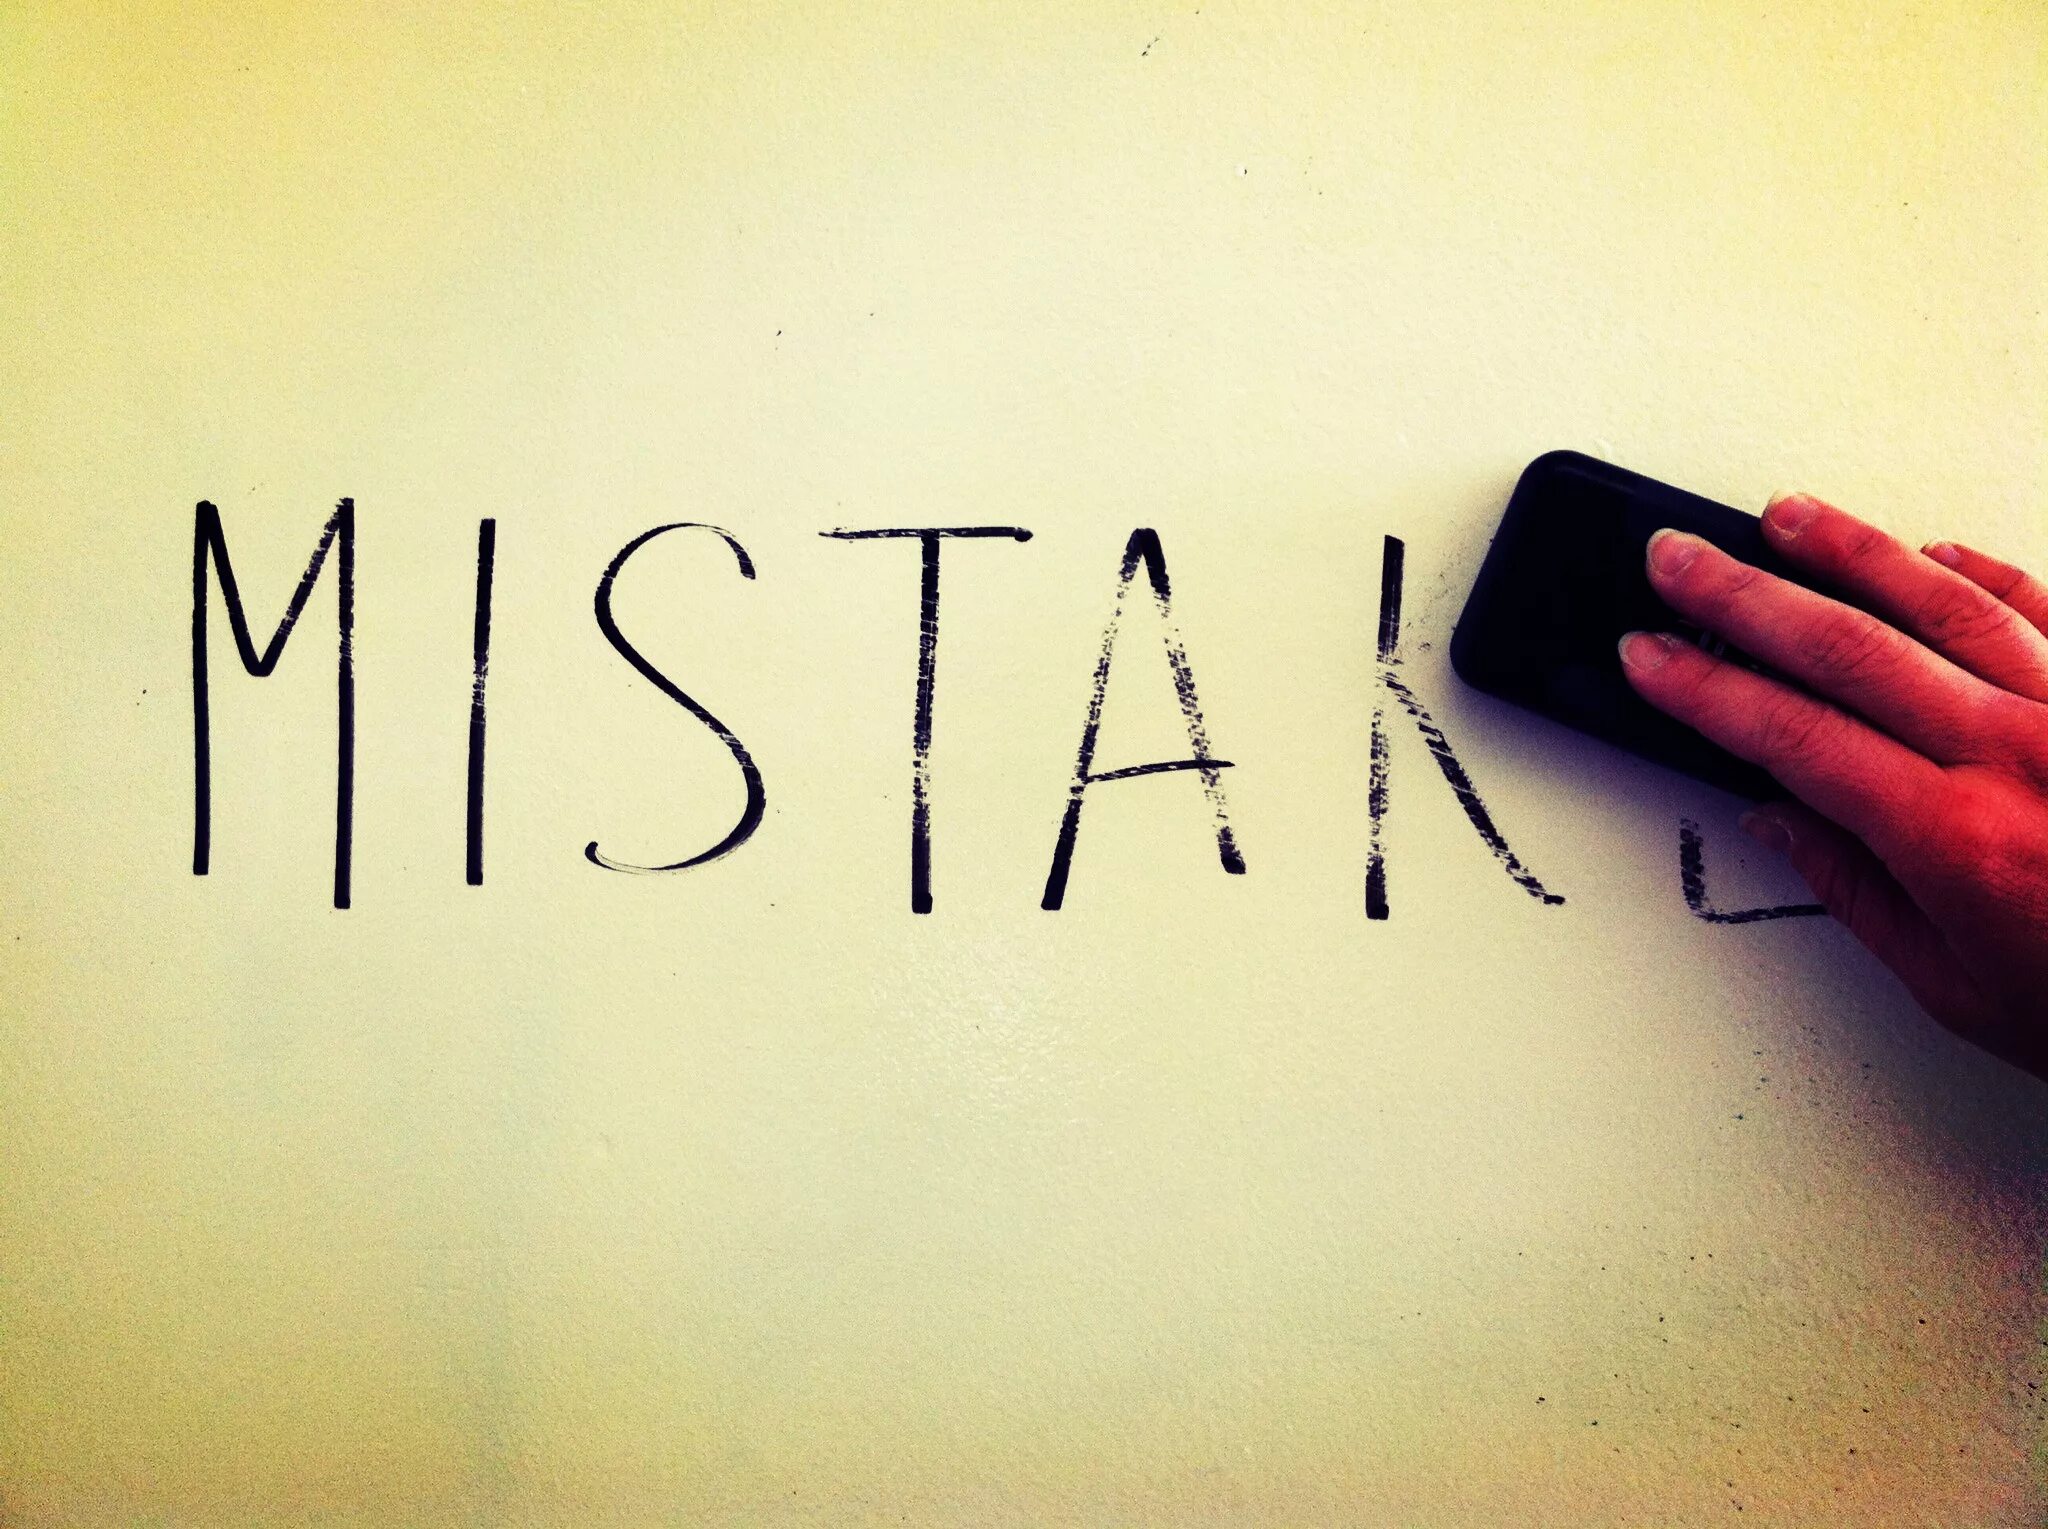 Mistakes картинки. Mistake рисунок. Make a mistake картинка. Make a mistake картинки для презентации. My best mistake